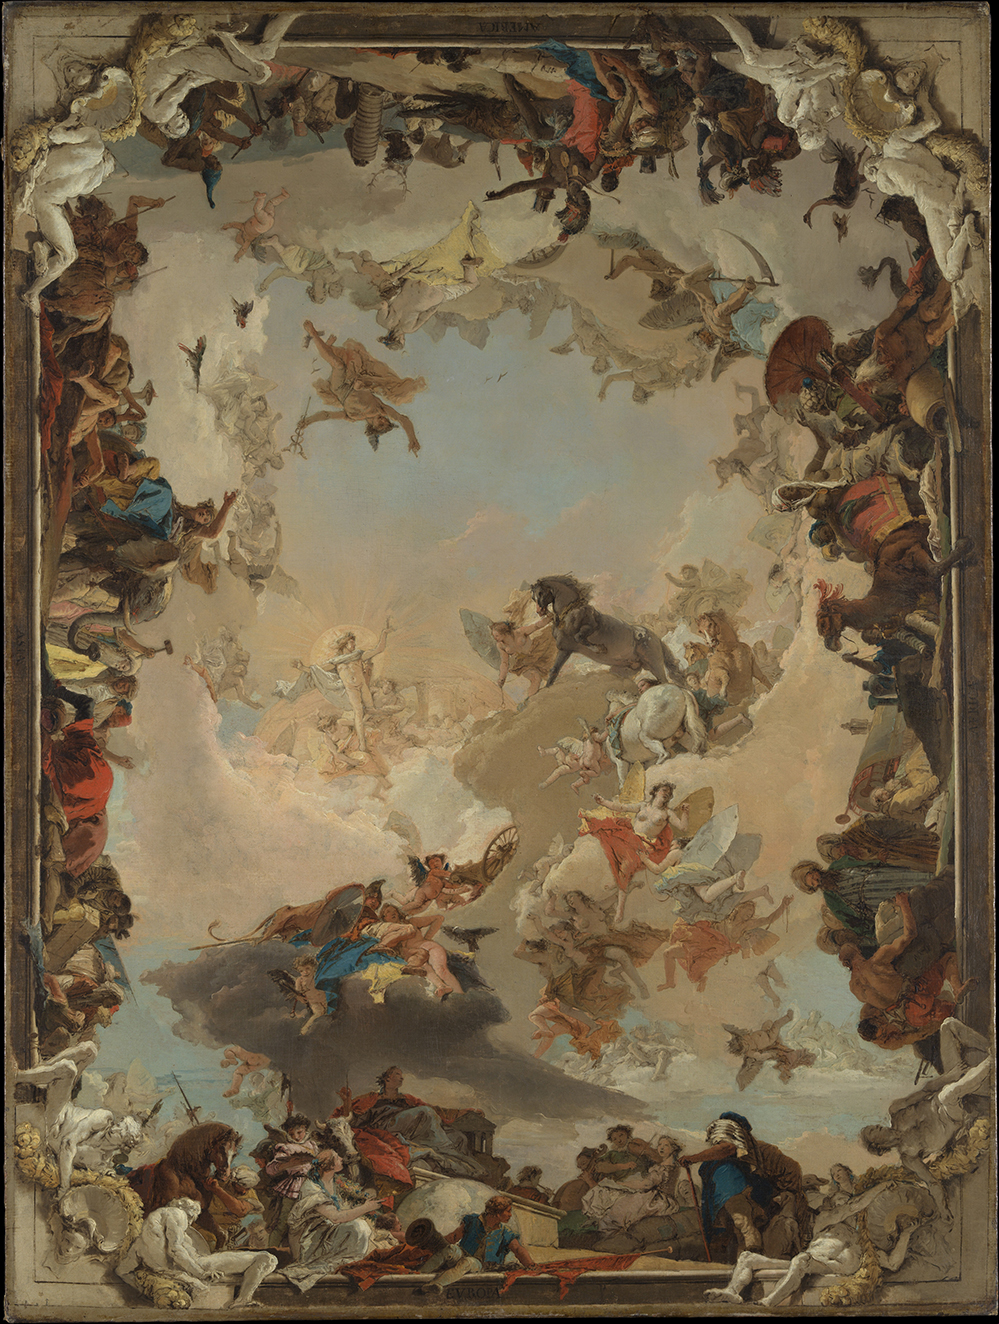 Tác phẩm “Allegory of the Planets and Continents” (Câu chuyện ngụ ngôn về các hành tinh và lục địa) của họa sĩ Giovanni Battista Tiepolo, năm 1752. Sơn dầu trên vải canvas. Viện bảo tàng Nghệ thuật Metropolitan, New York. (Ảnh: Tài liệu công cộng)